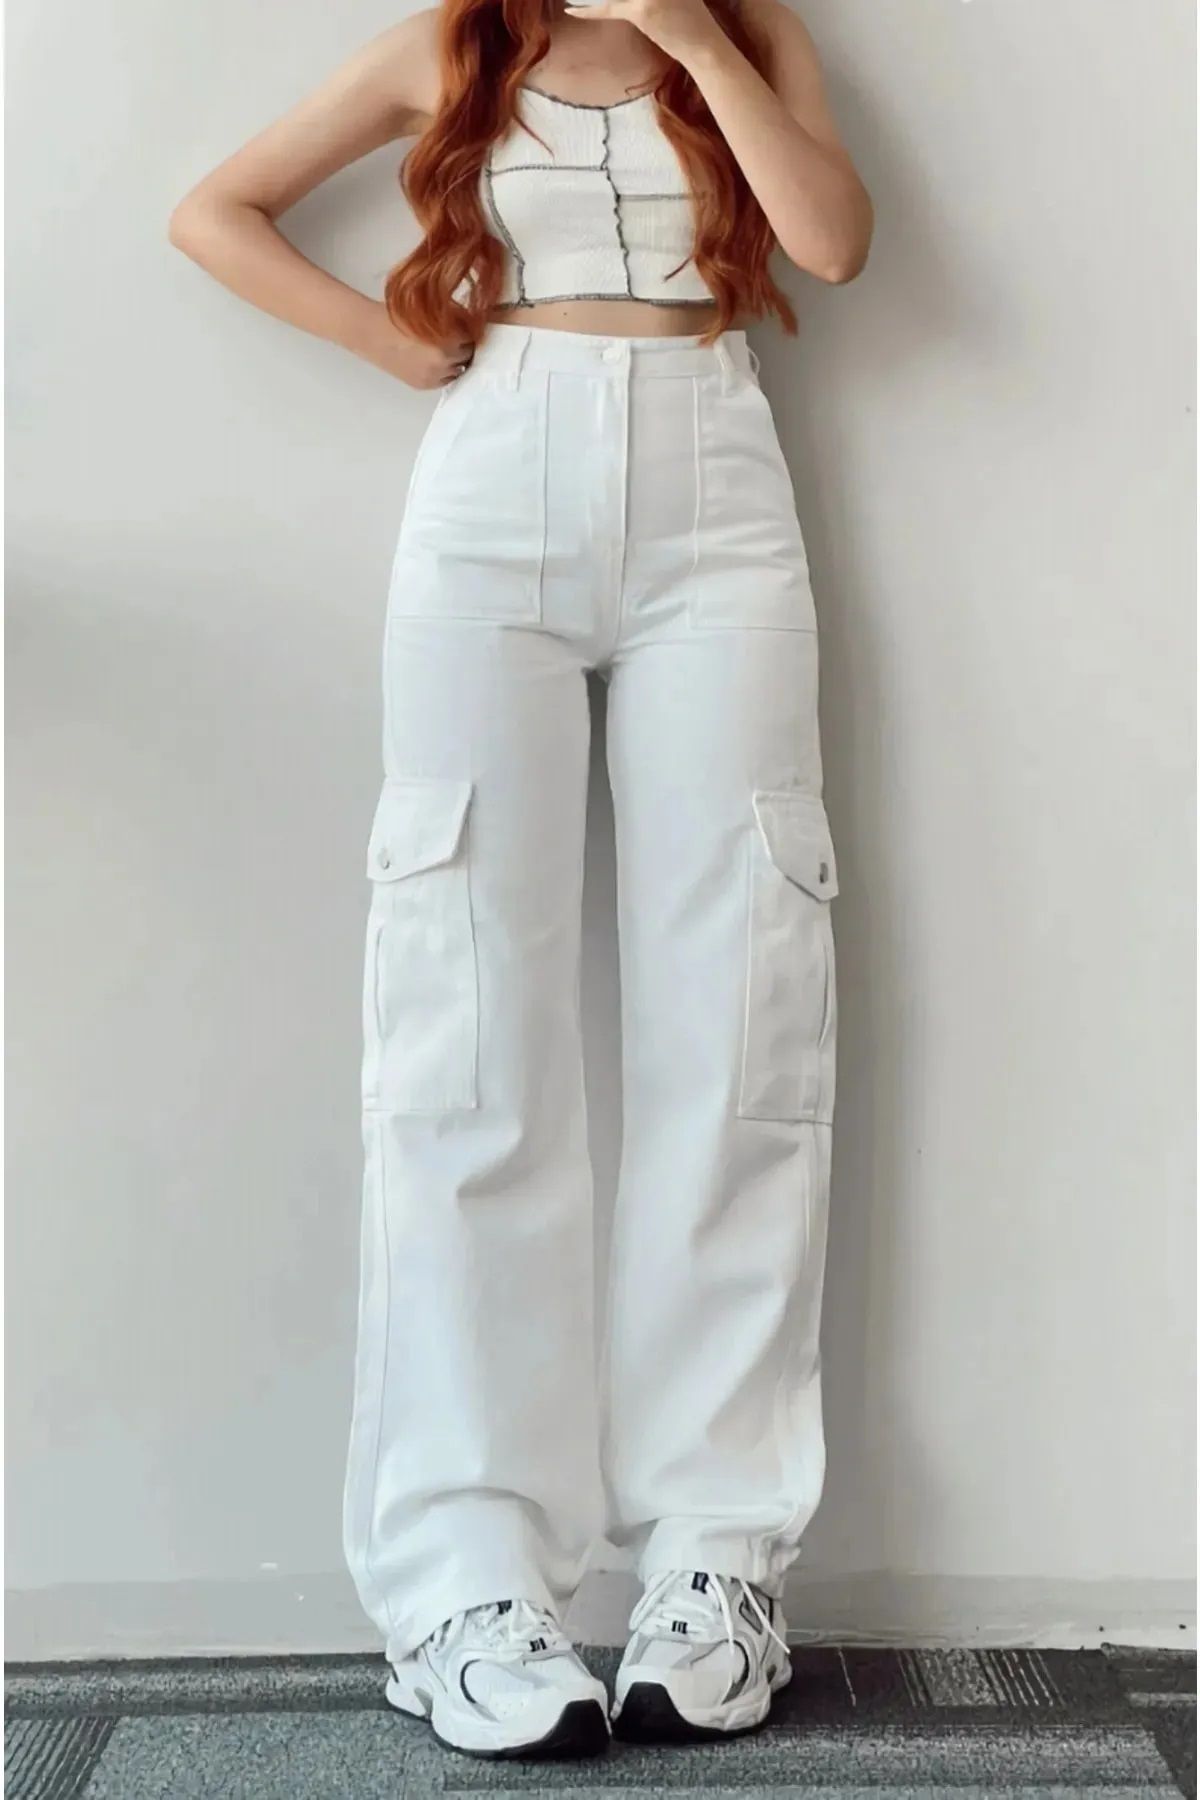 LAMİRA Yüksek Bel Kargo Cepli Beyaz Jeans Kadın Kot Pantolon ( Satıcıya Sorarak Alınız )